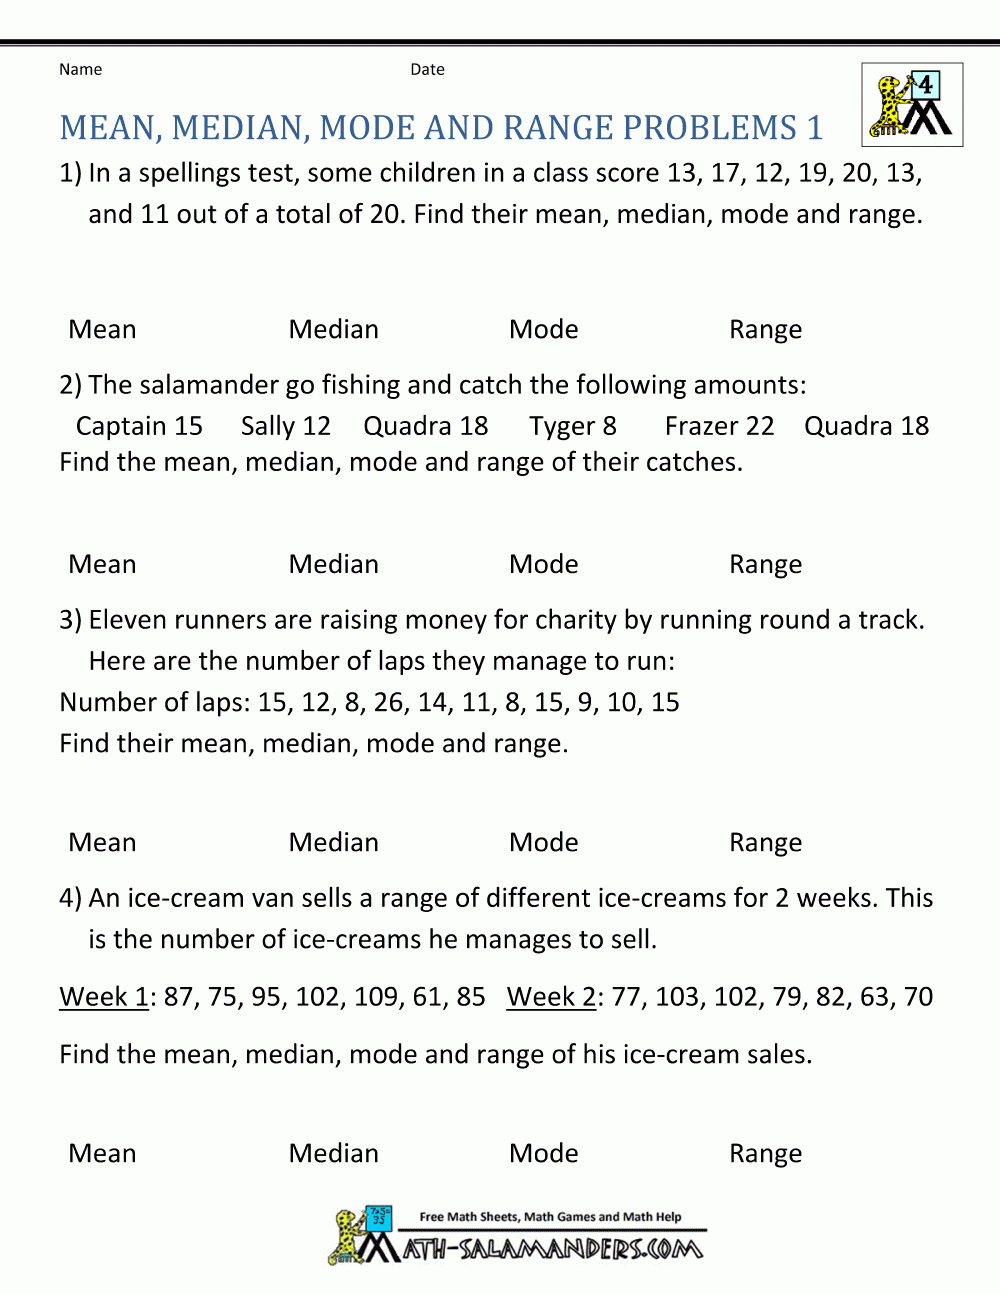 Statistics Worksheets Mean Median Mode Range Problems 1 | 5Th Grade - Free Printable Statistics Worksheets